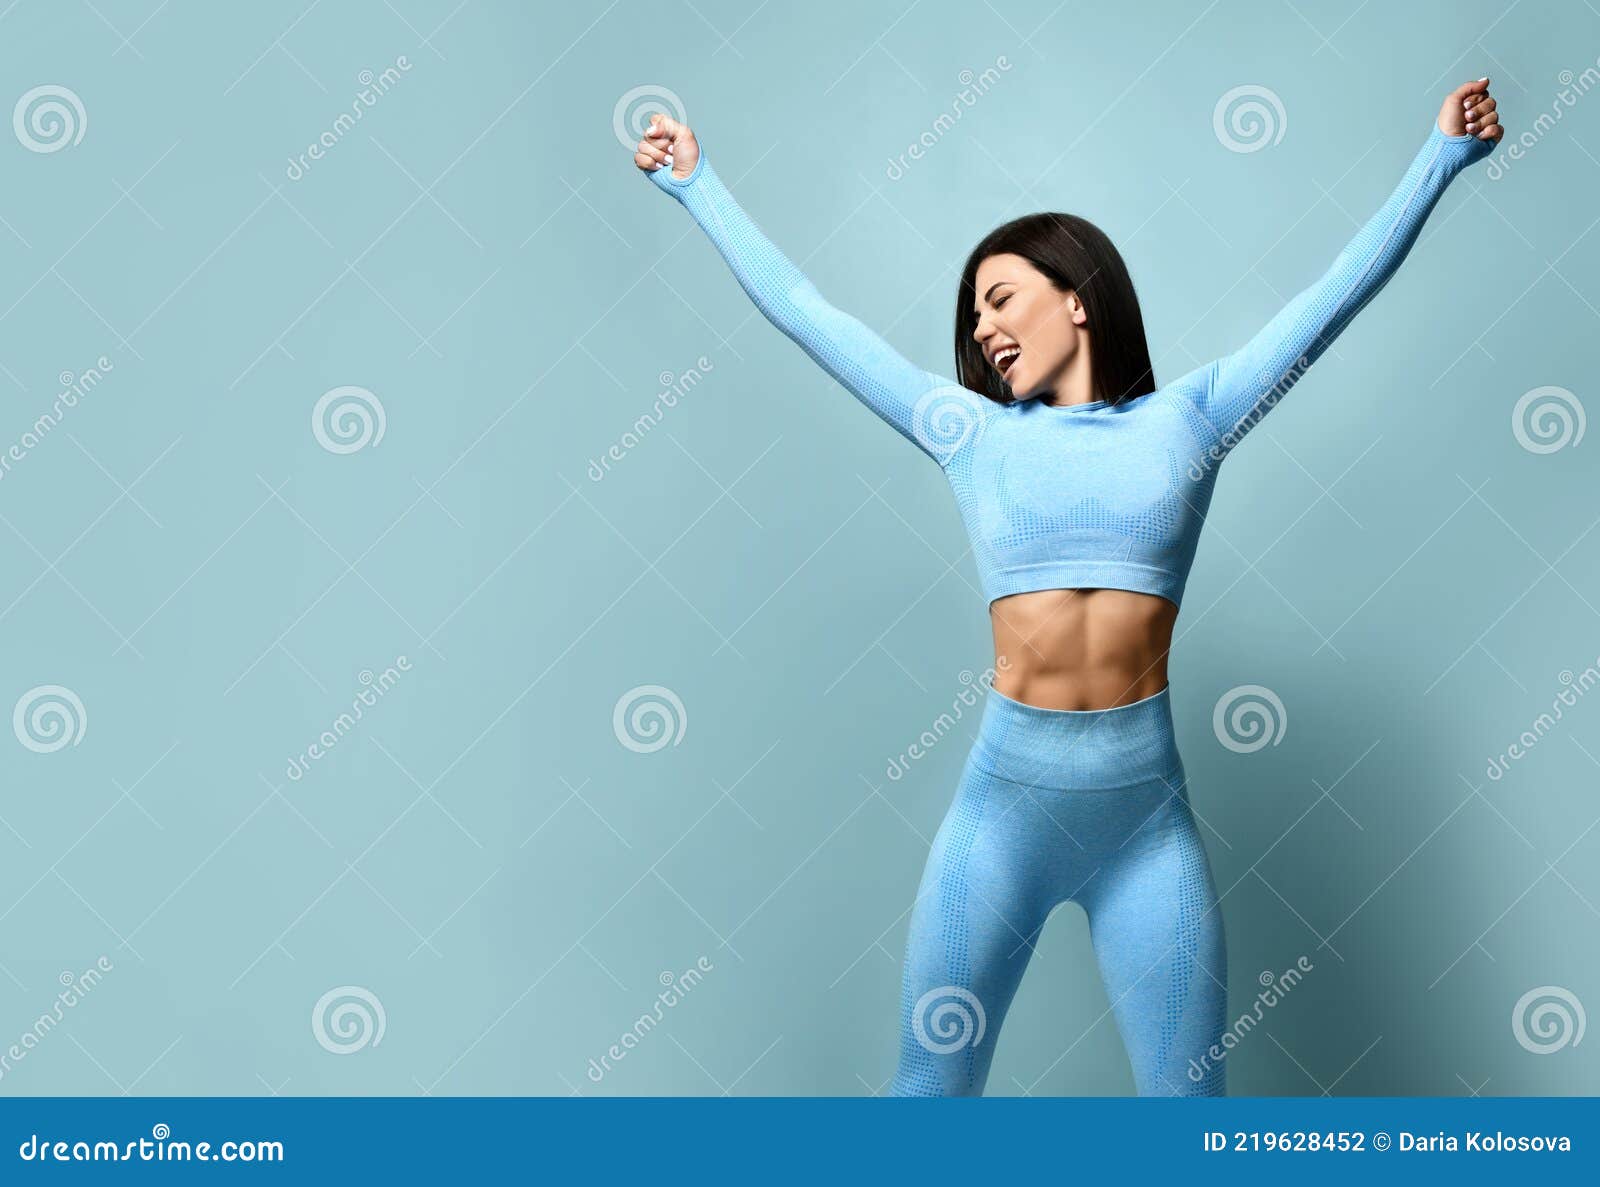 https://thumbs.dreamstime.com/z/hermosa-fitness-modelo-chicas-posando-con-ropa-deportiva-chica-en-concepto-deportivo-retrato-de-girl-mujer-moda-pie-sobre-un-fondo-219628452.jpg